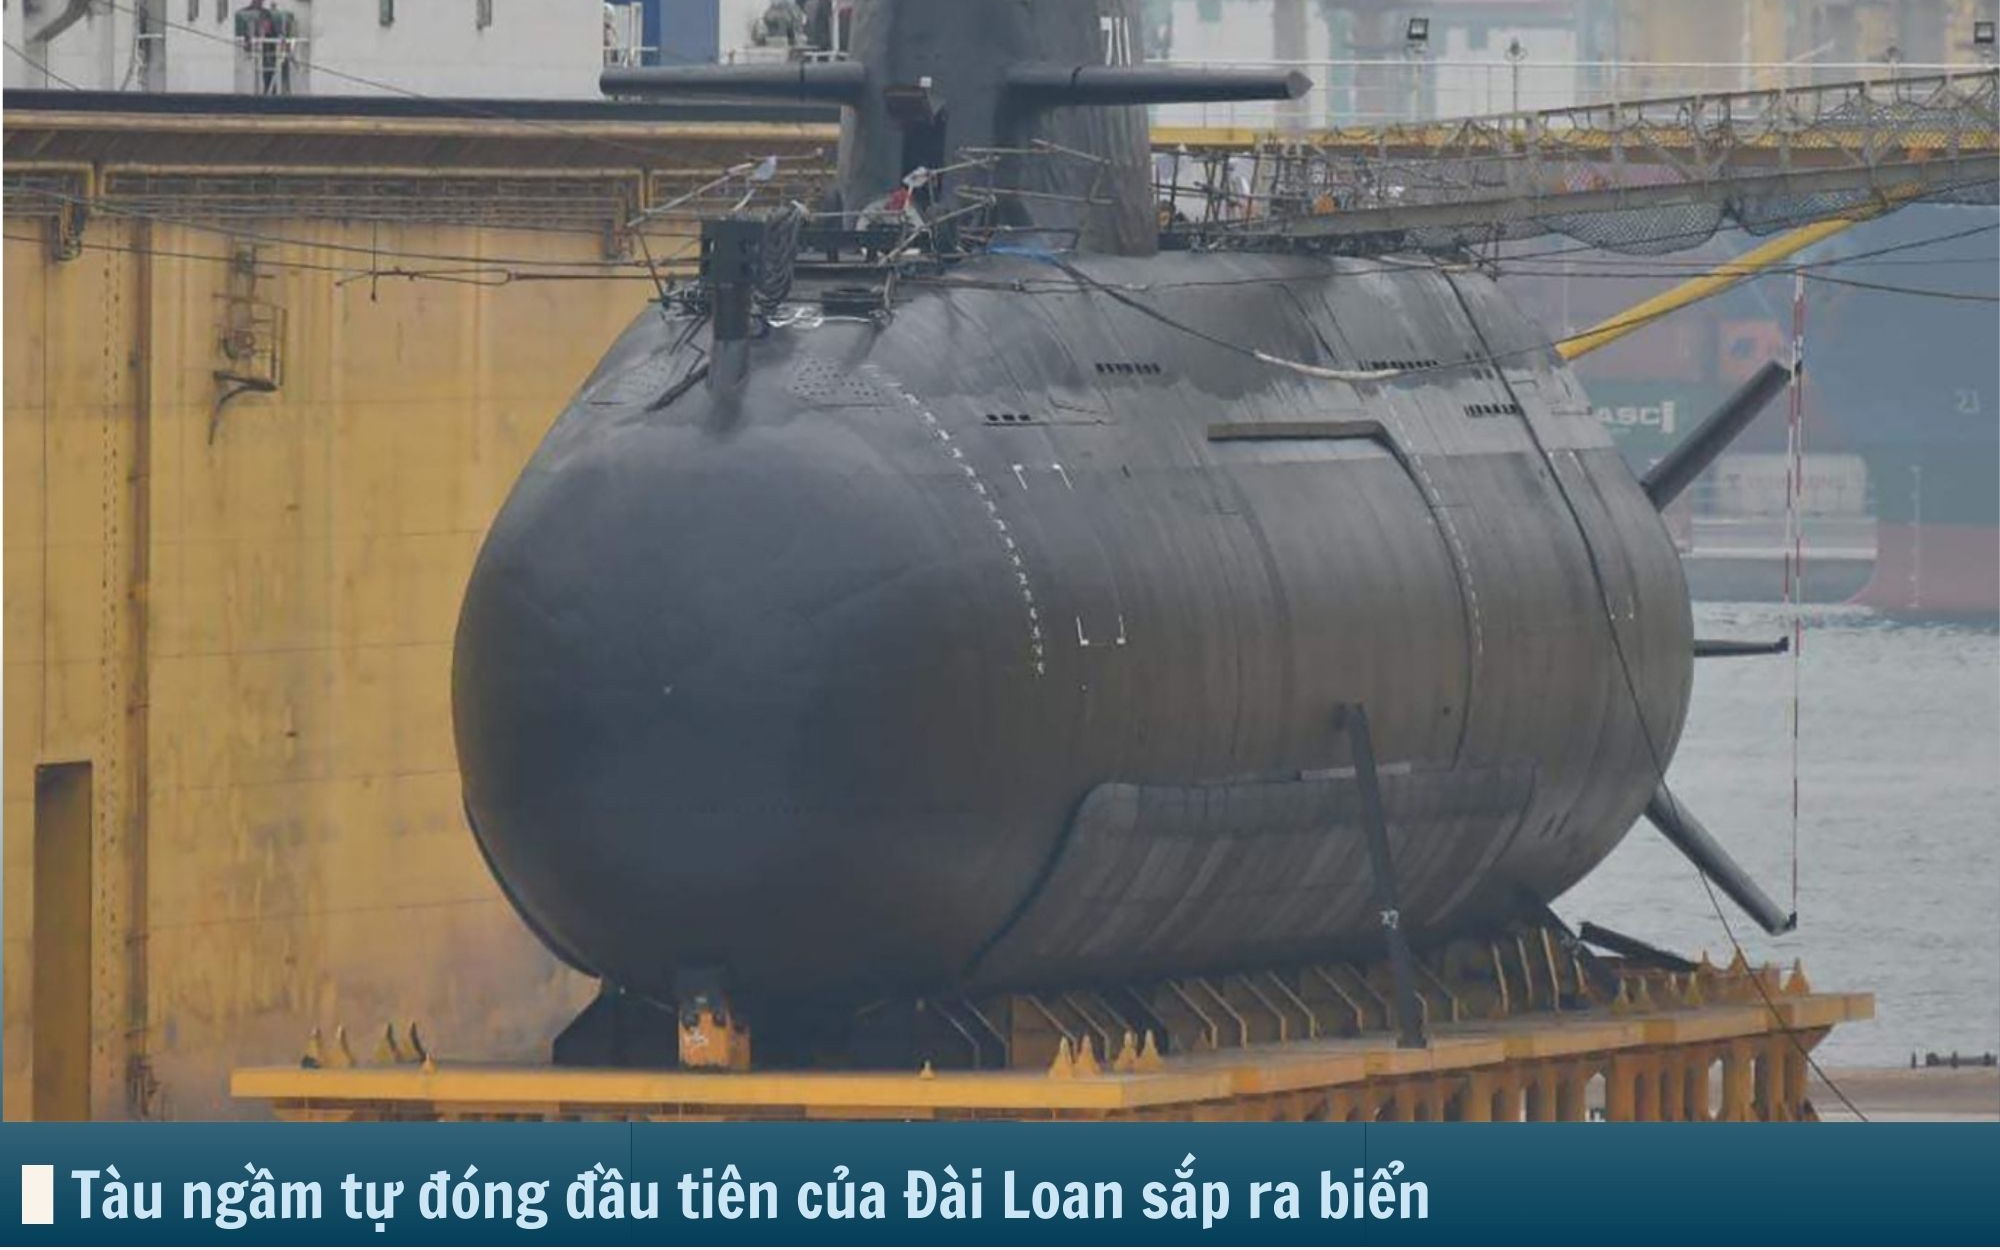 Hình ảnh báo chí 24h: Chiêm ngưỡng tàu ngầm tự đóng của Đài Loan sắp ra biển